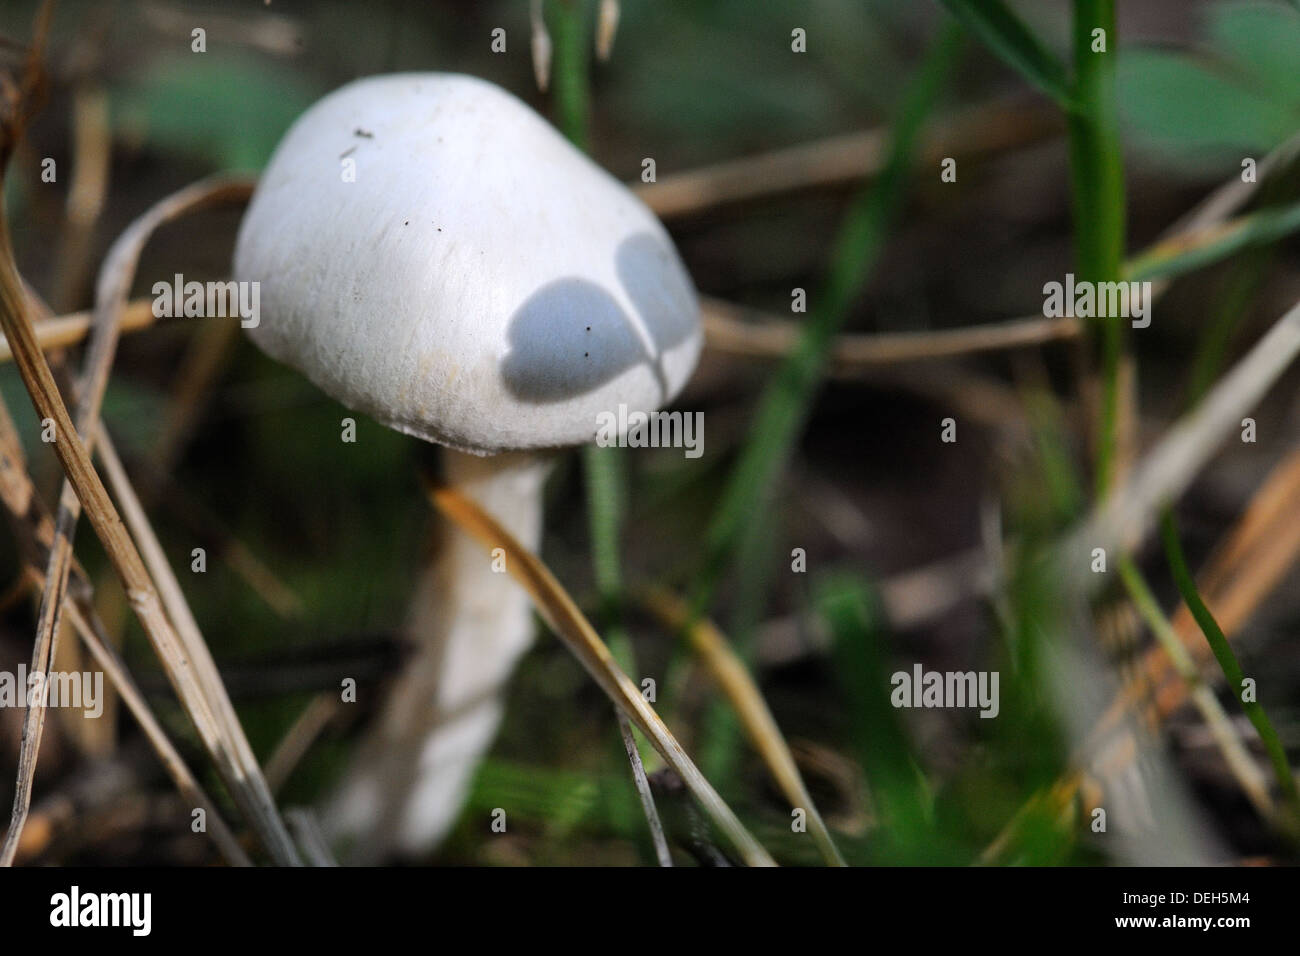 Petit uneatable la culture des champignons dans la forêt Banque D'Images